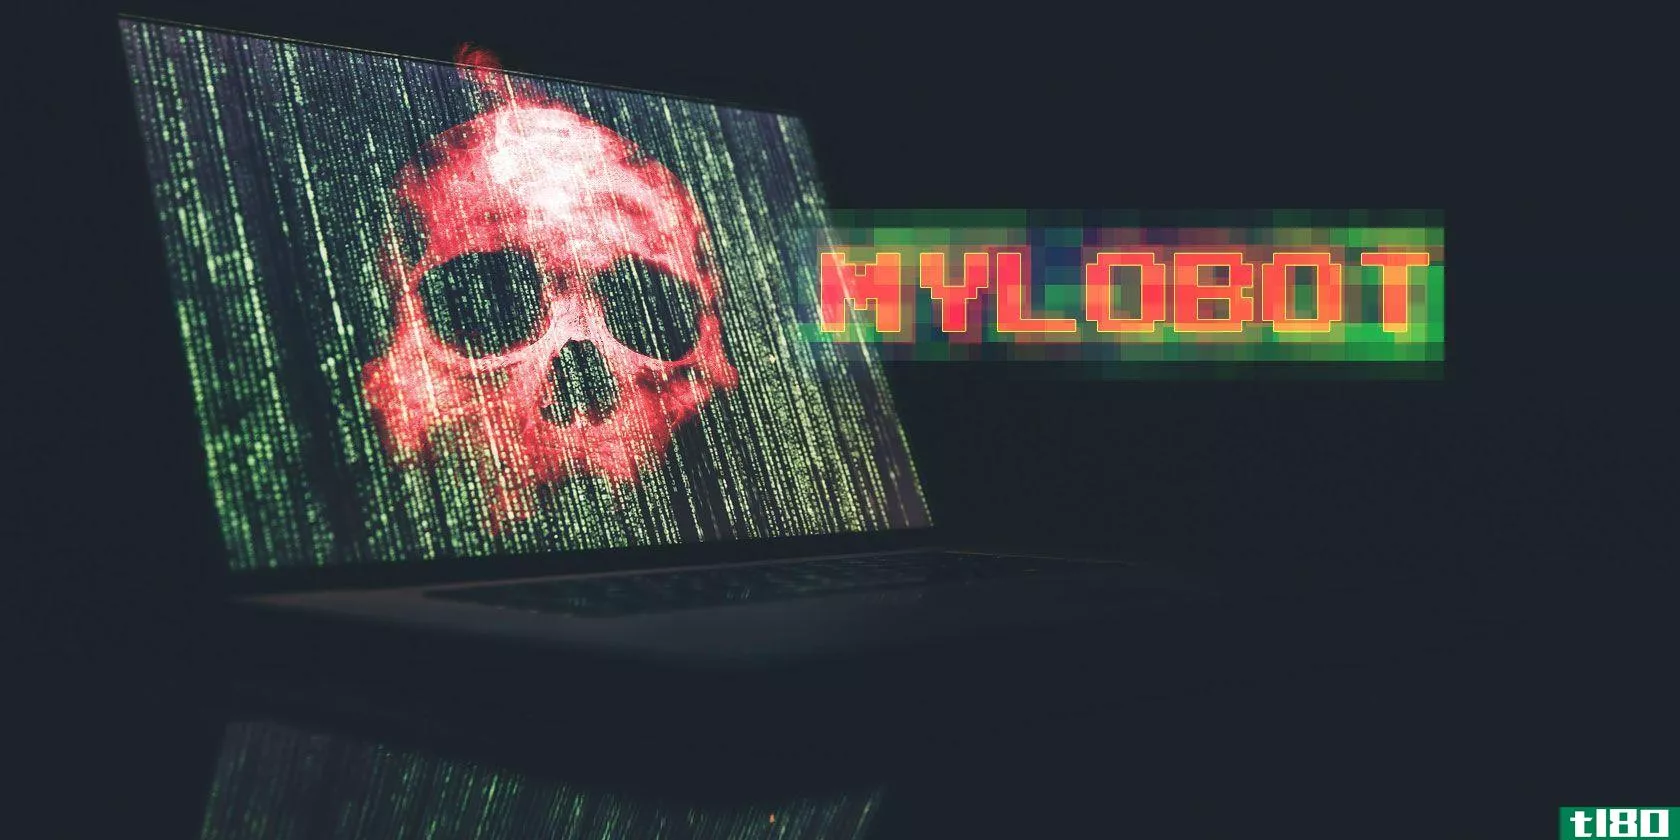 什么是mylobot恶意软件？它是如何工作的，该怎么办